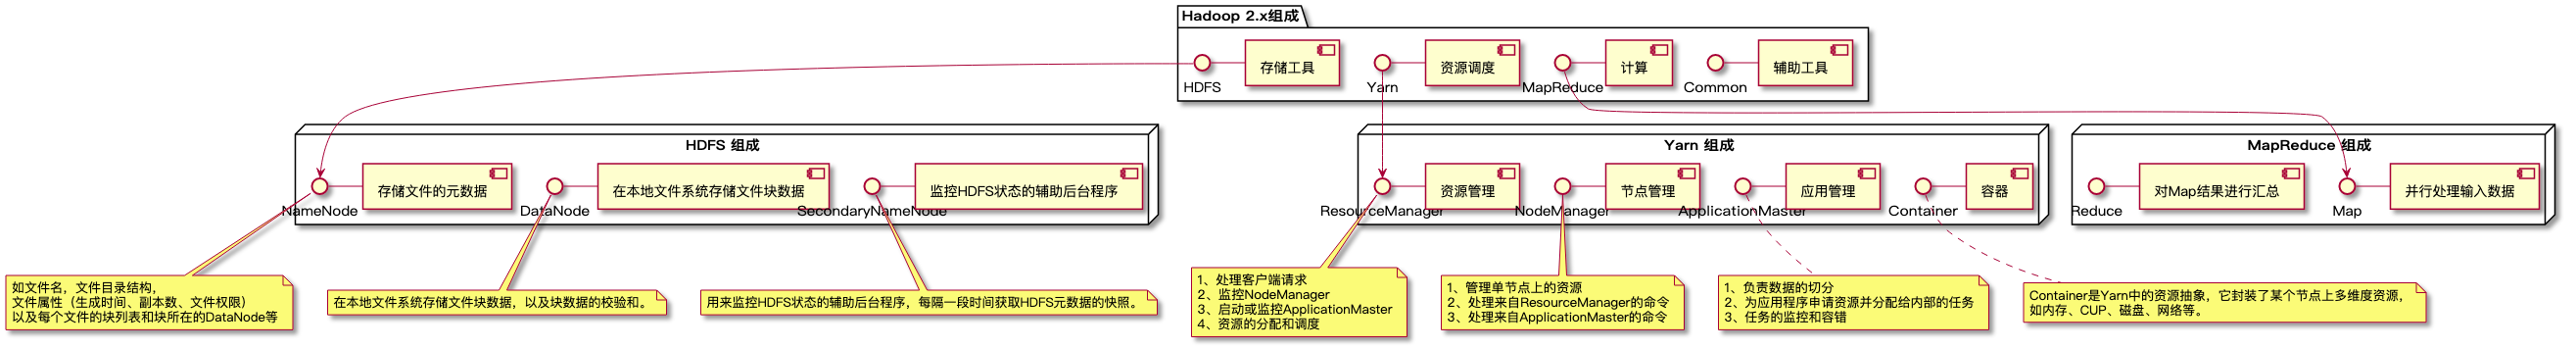 Hadoop 1.x 和Hadoop 2.x的区别是什么